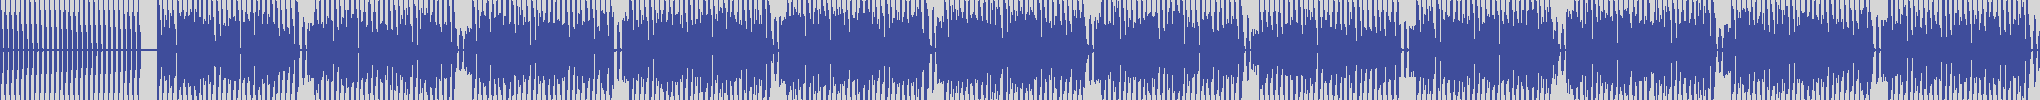 nf_boyz_records [NFY020] Yuko - Ink [Oriental Mix] audio wave form